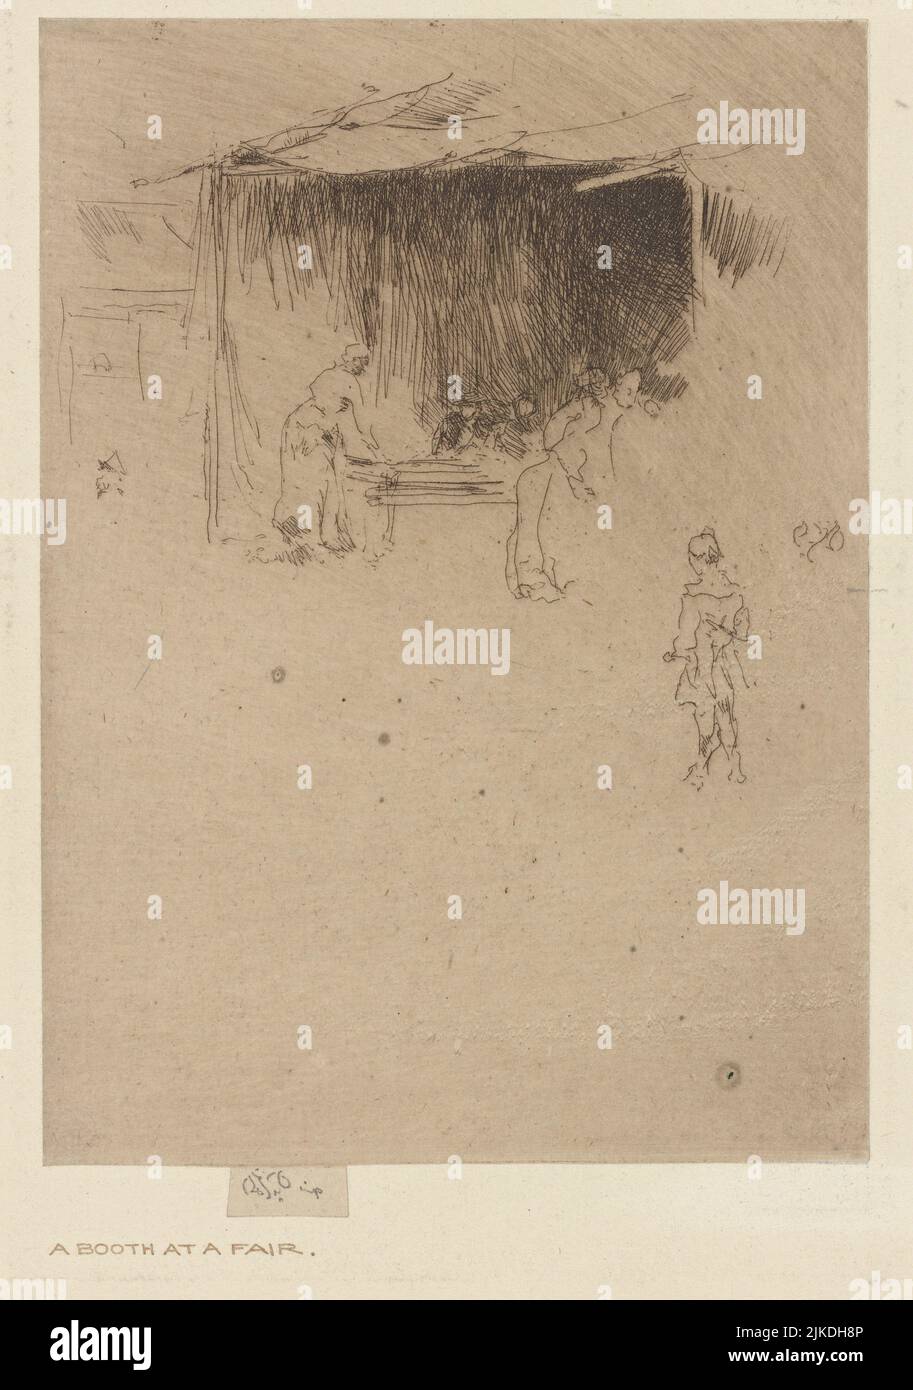 Gravure de Whistler 246. Avery, Samuel Putnam, 1822-1904 (collectionneur) Whistler, James McNeill (1834-1903) (artiste). Samuel Putnam Avery Collection James Banque D'Images